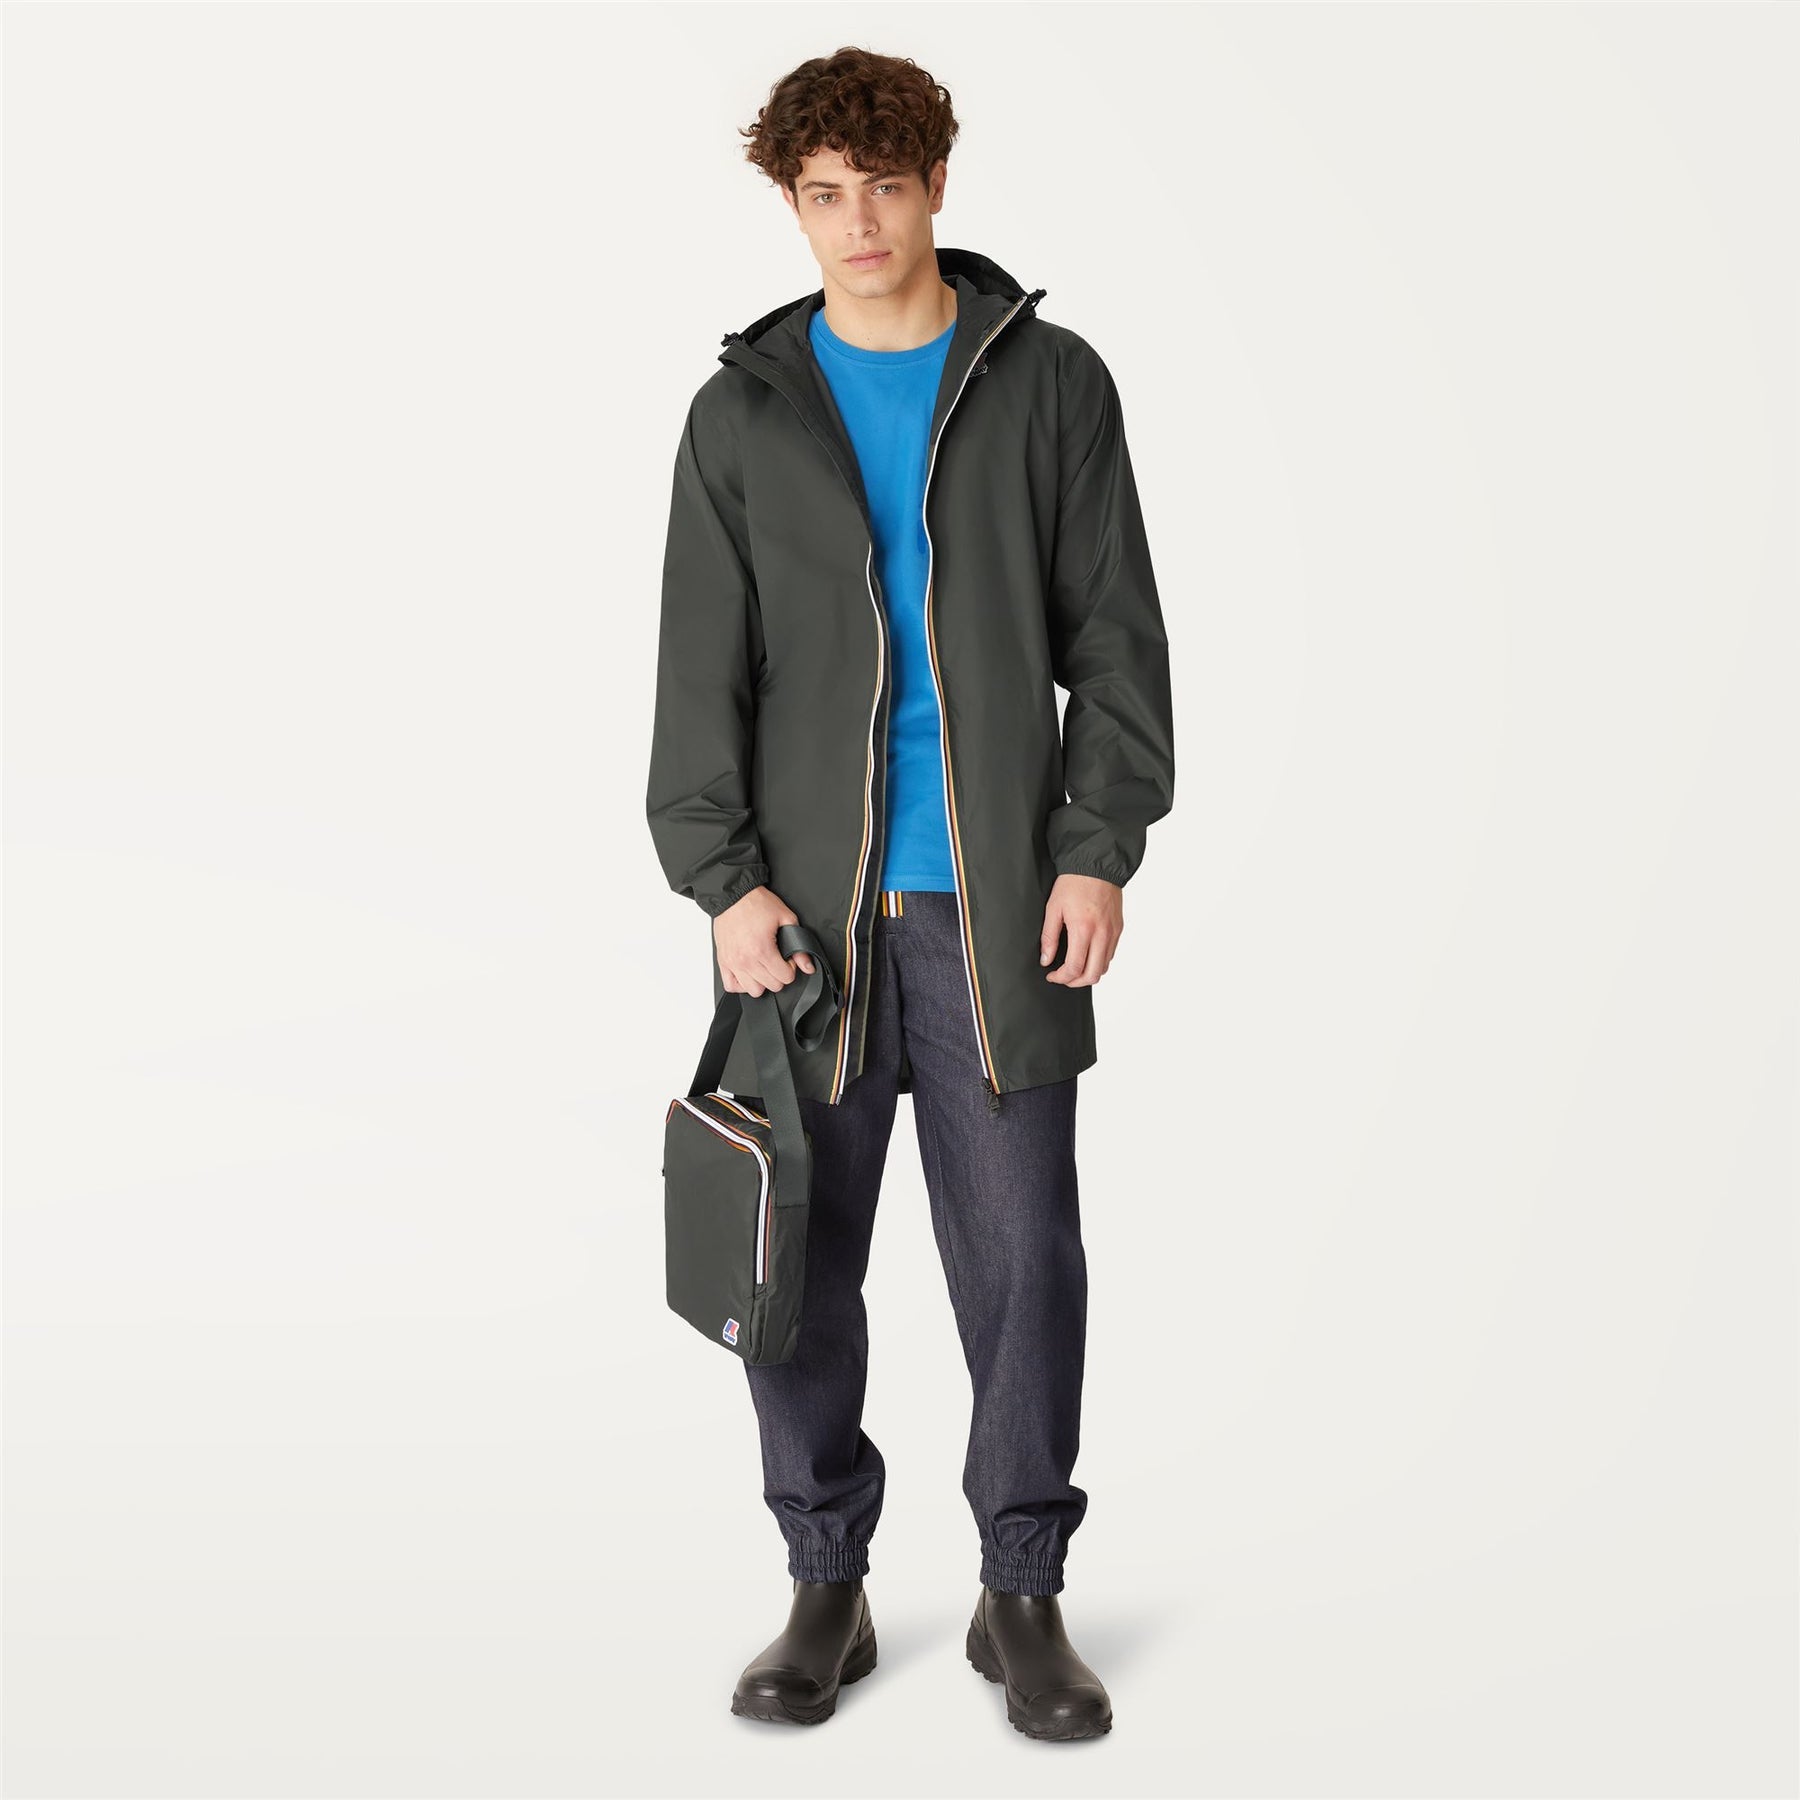 Packable Rain Jacket, The Waterproof Multiway Jacket